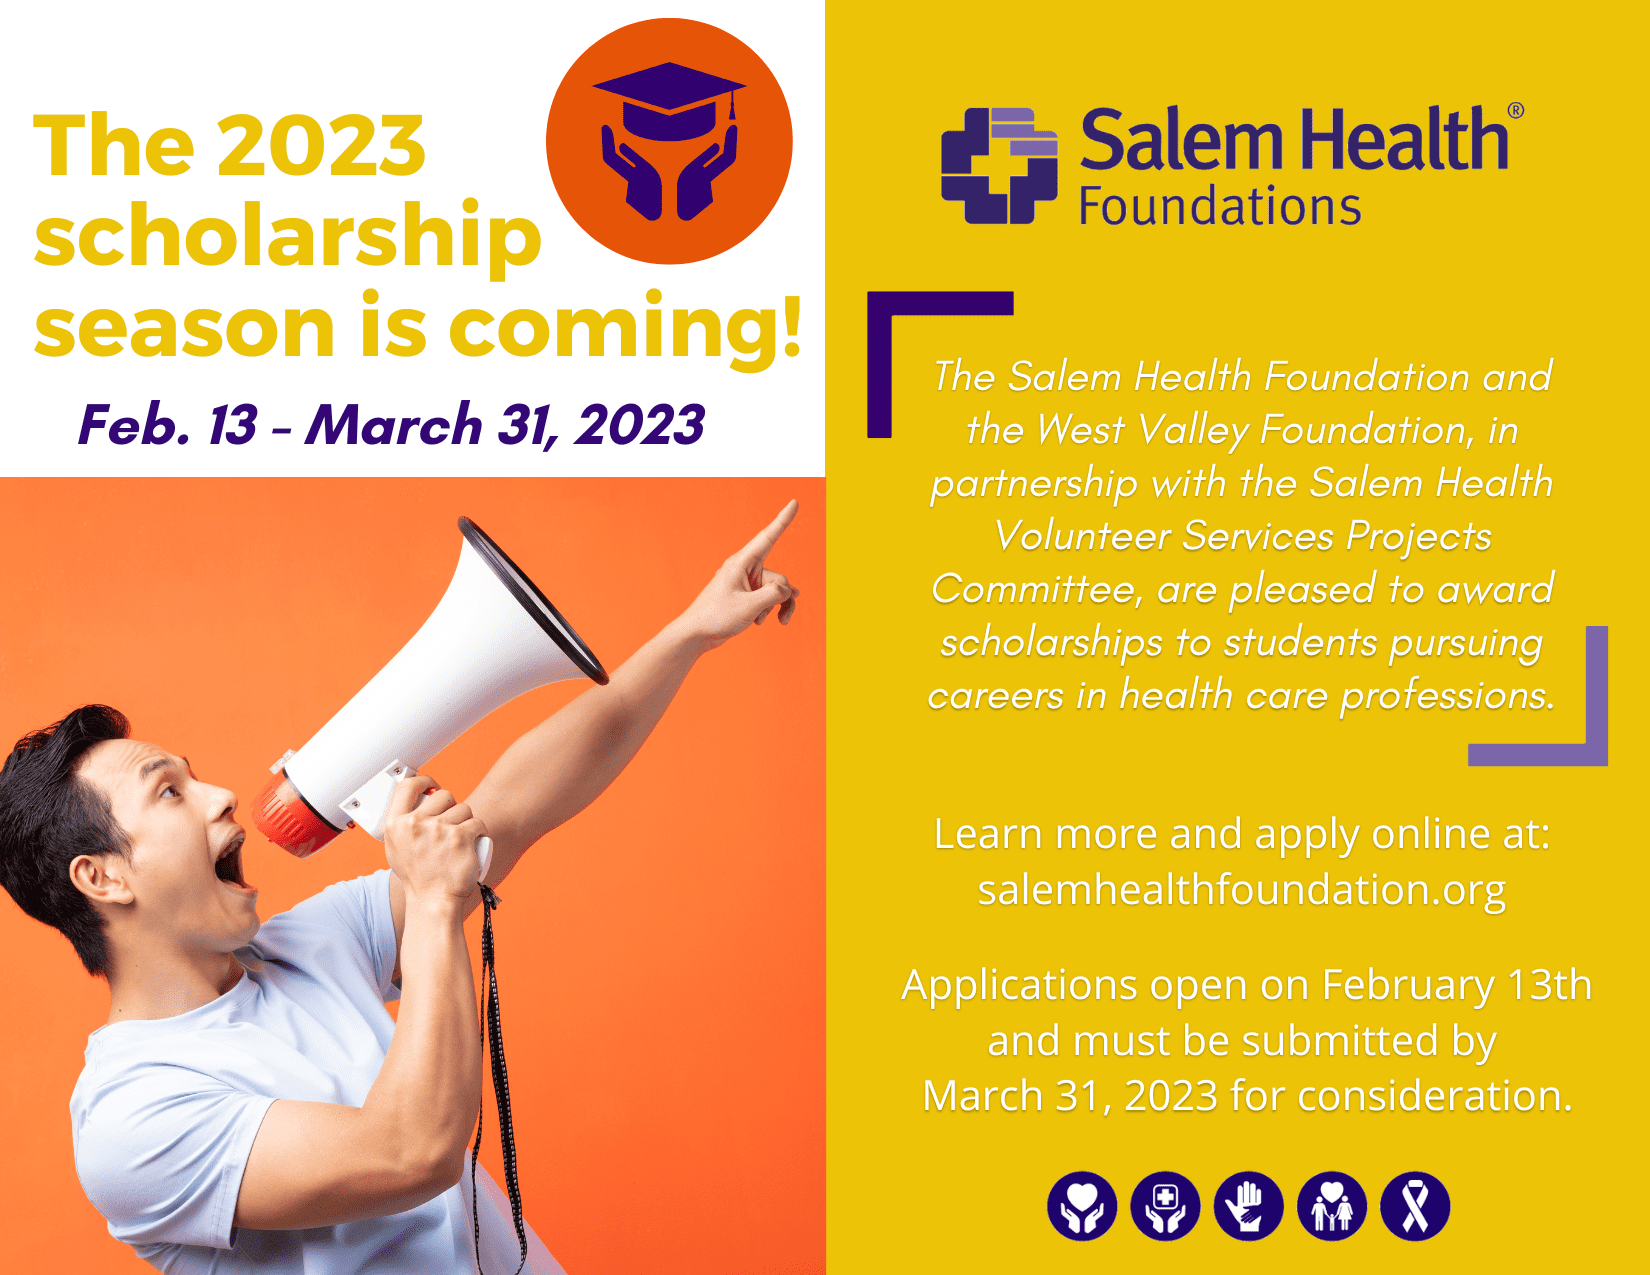 2023-scholarship-coming-orange